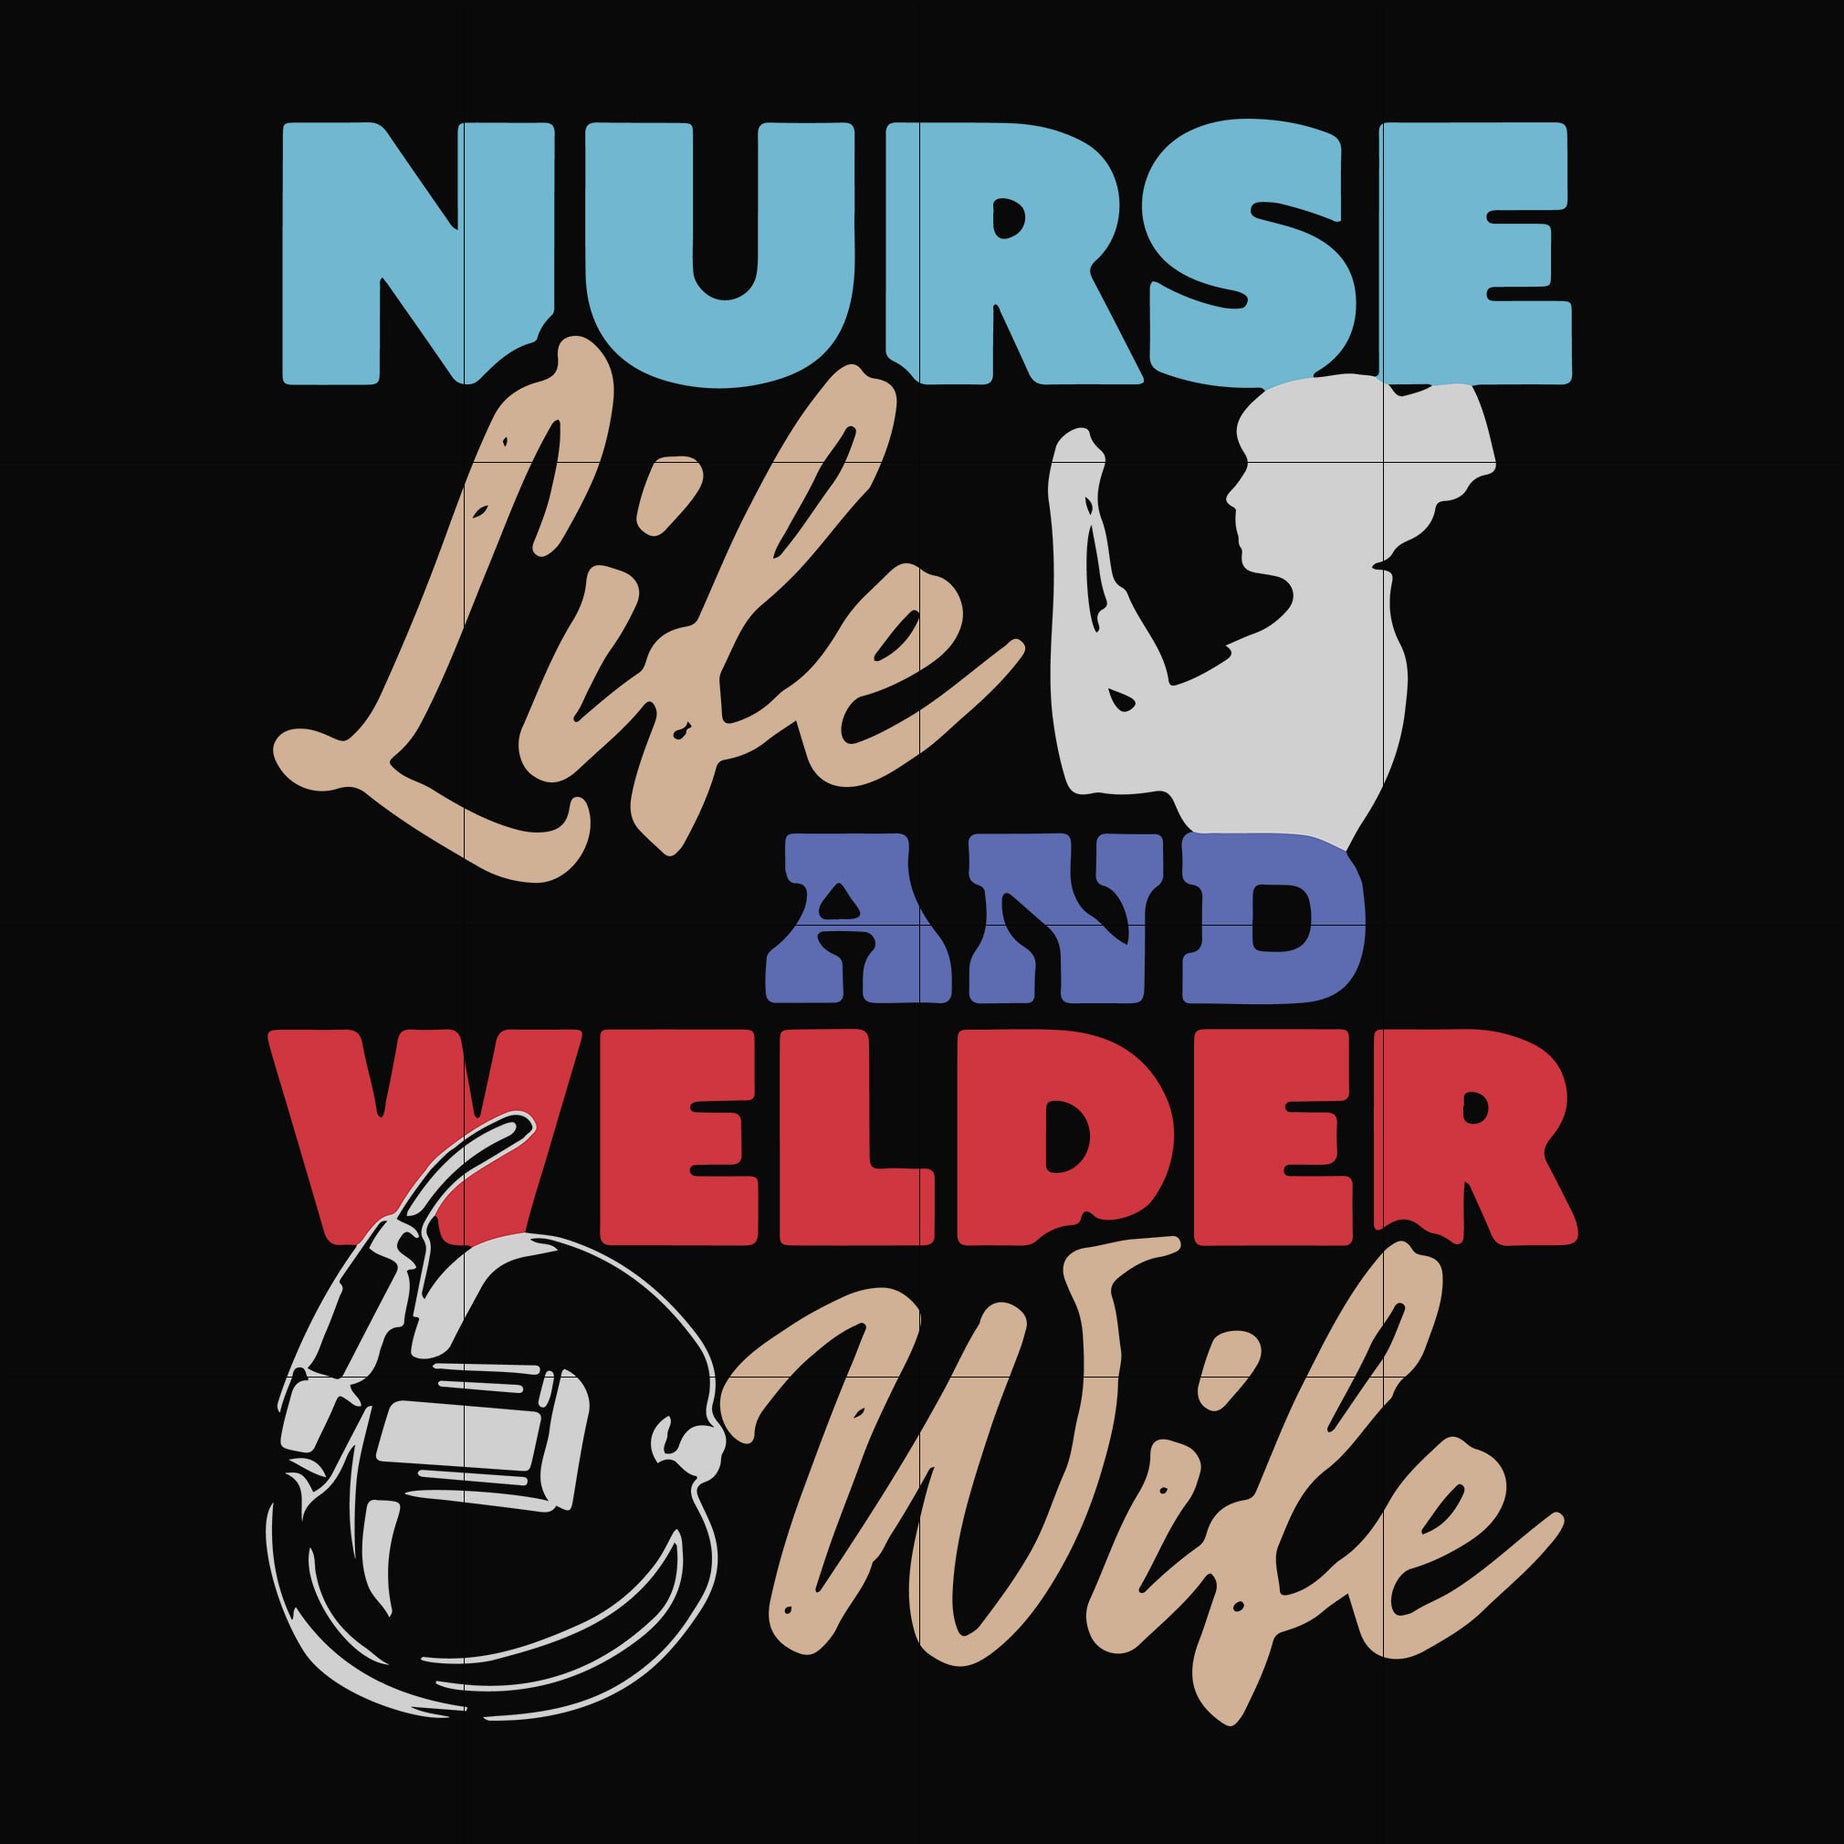 Nurse life and welder wife svg, png, dxf, eps digital file TD31072036 ...